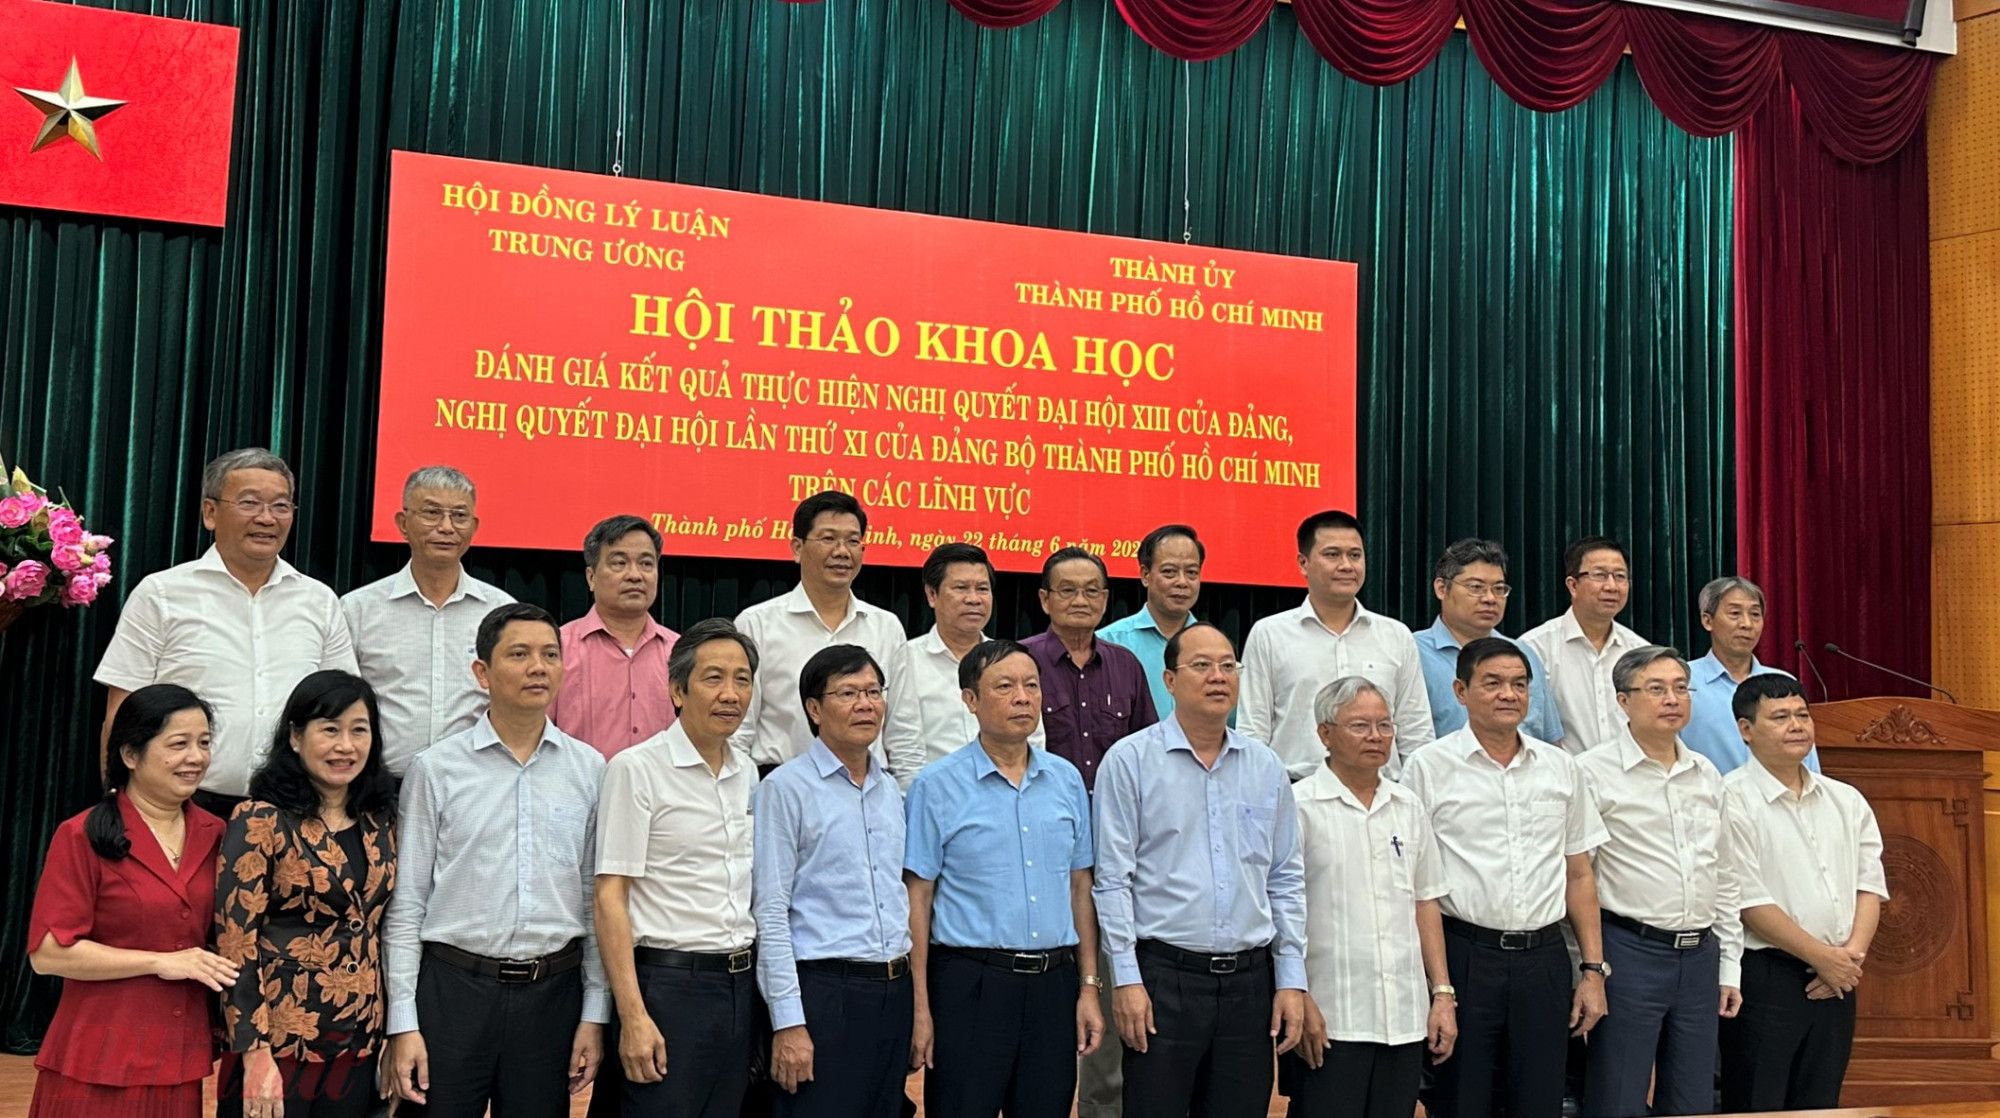 Hội thảo có sự tham gia của 80 đại biểu là ủy viên Hội đồng Lý luận Trung ương, lãnh đạo các tỉnh Tây Ninh, Bình Dương, Bình Phước, Bà Rịa – Vũng Tàu, Long An, Tiền Giang và TPHCM.